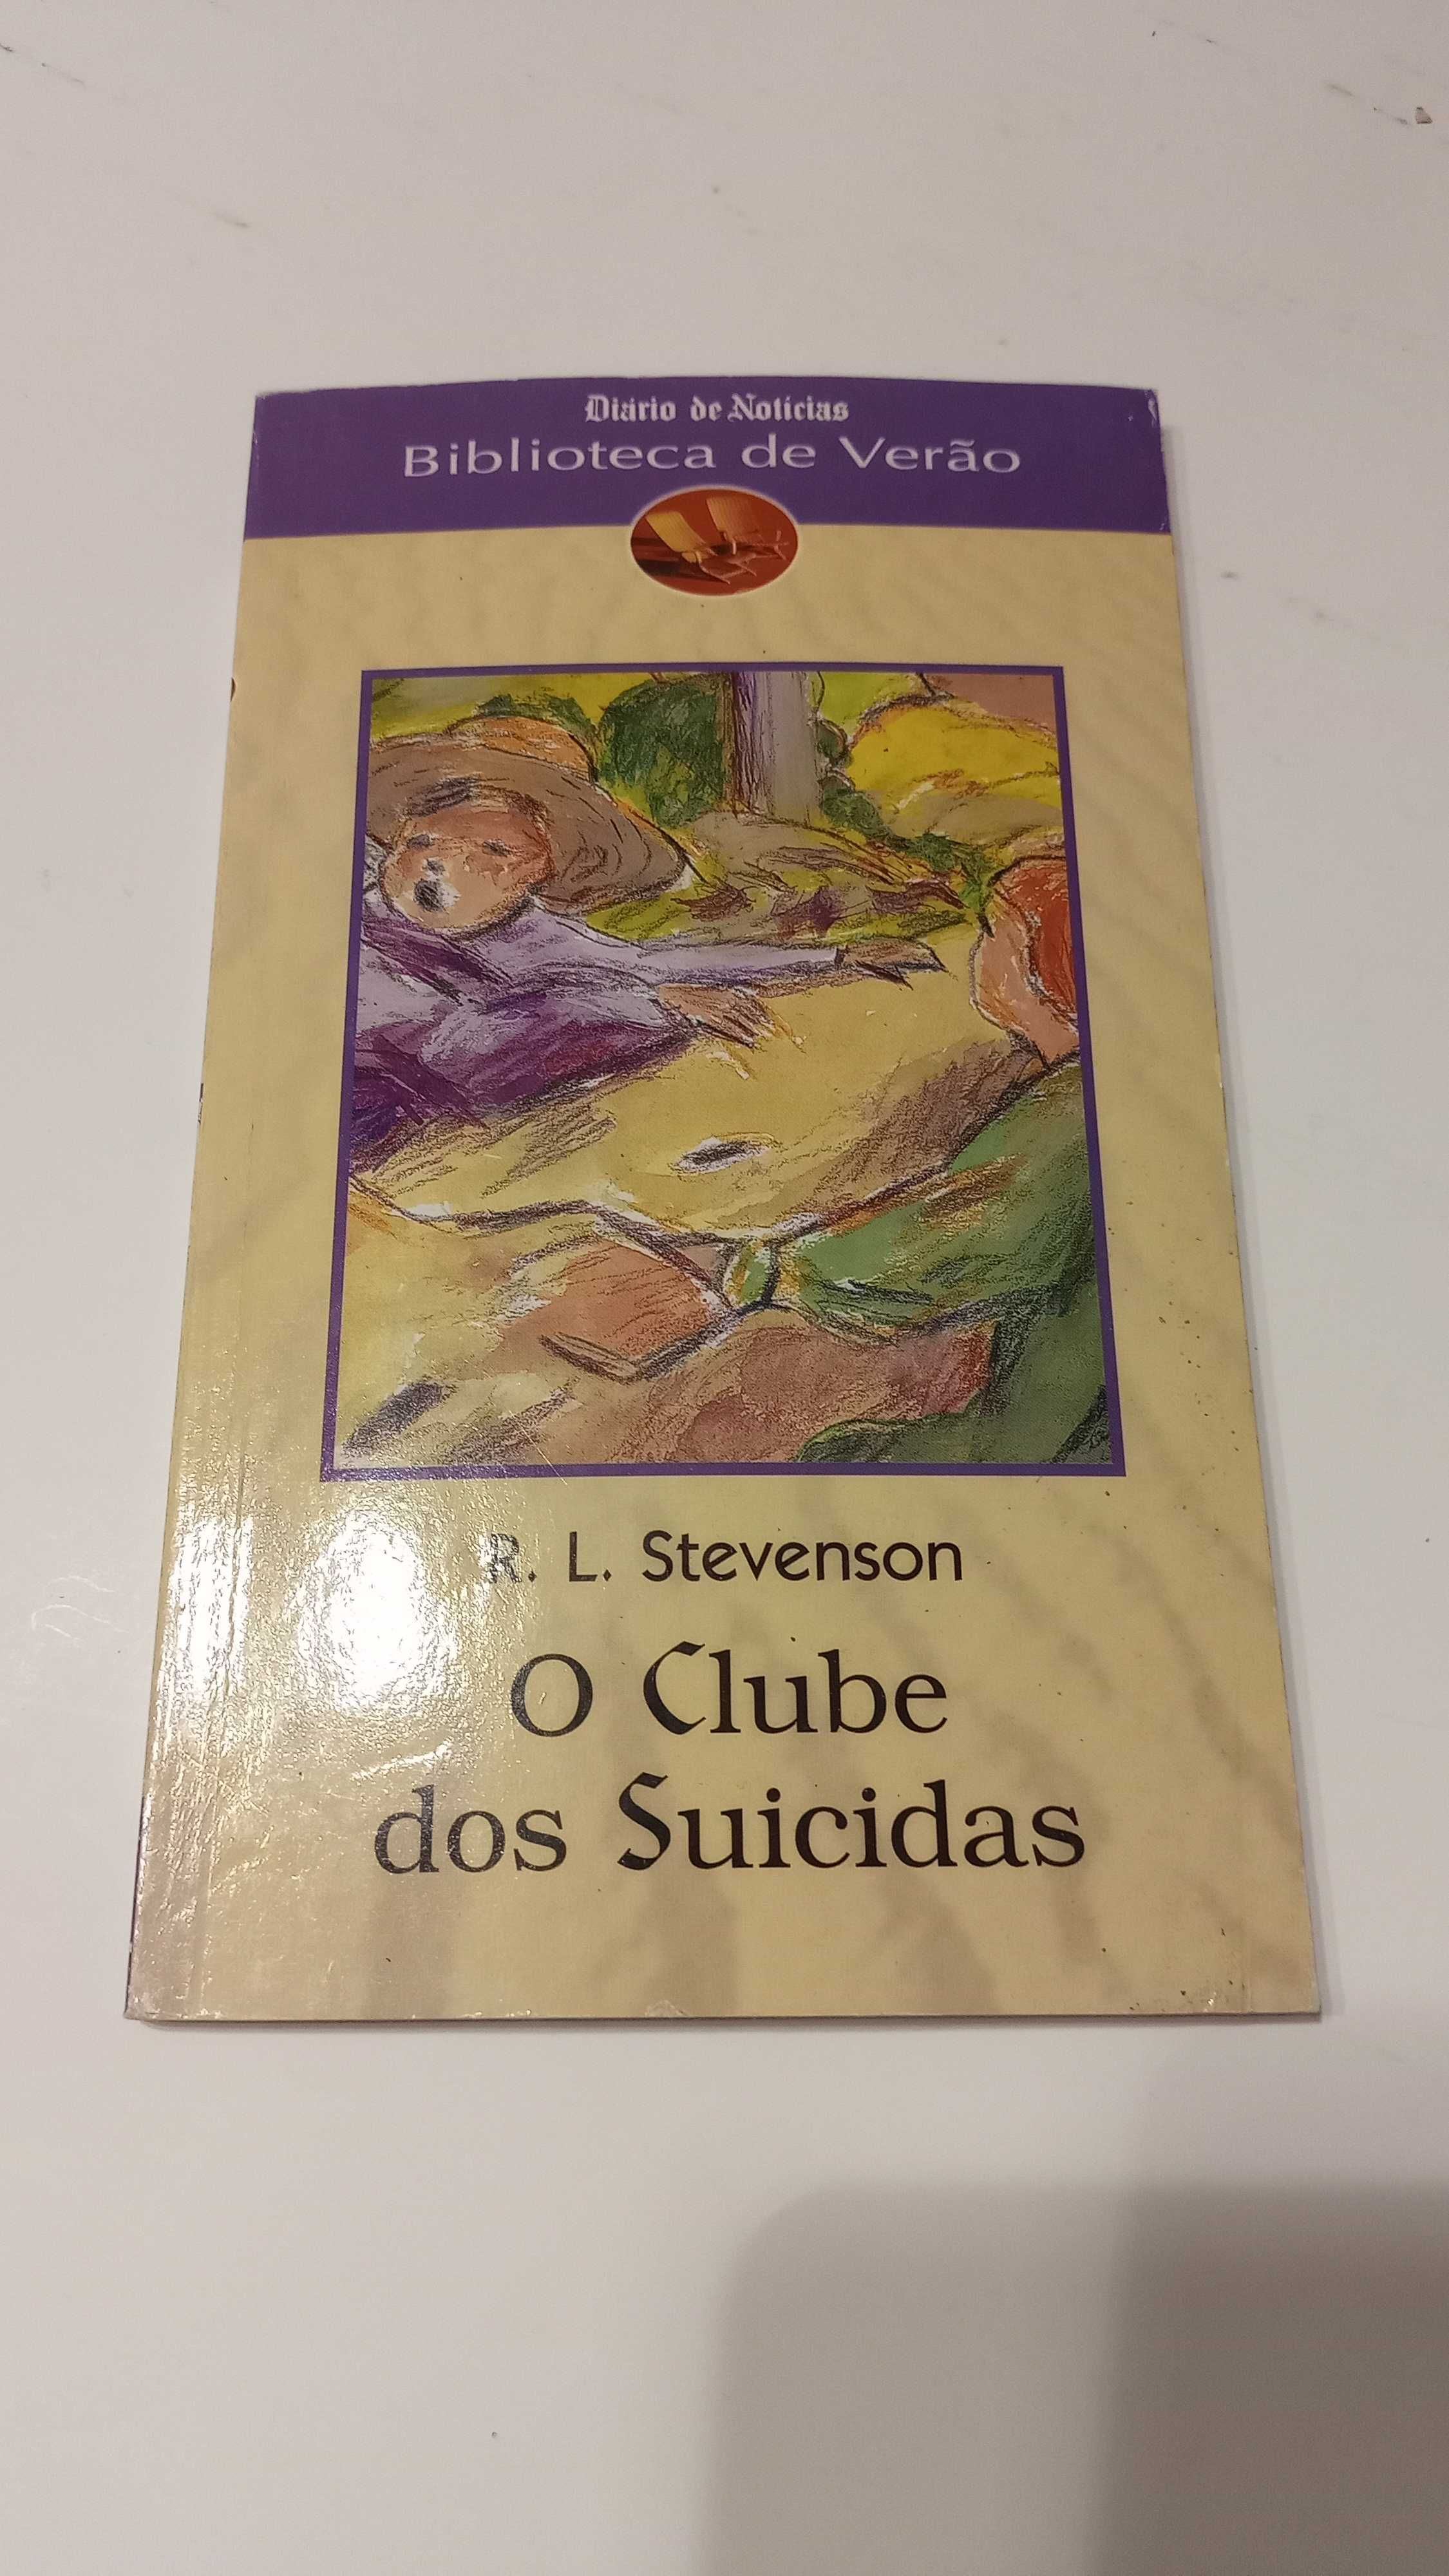 O Clube dos Suicidas de Robert Louis Stevenson